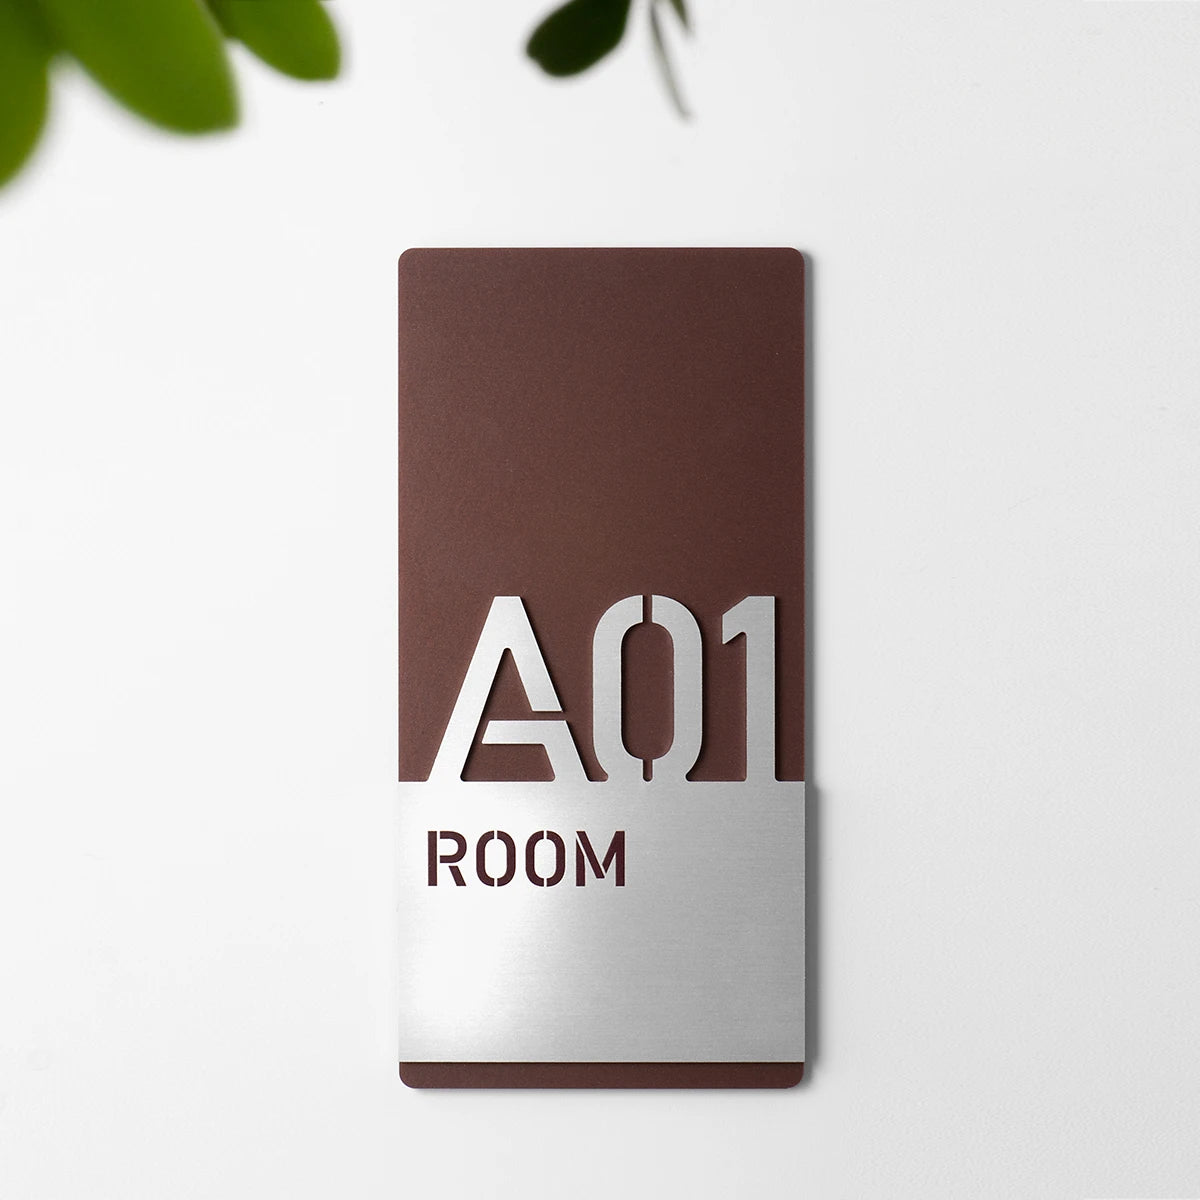 Numero camera hotel: acrilico stone brown e alluminio